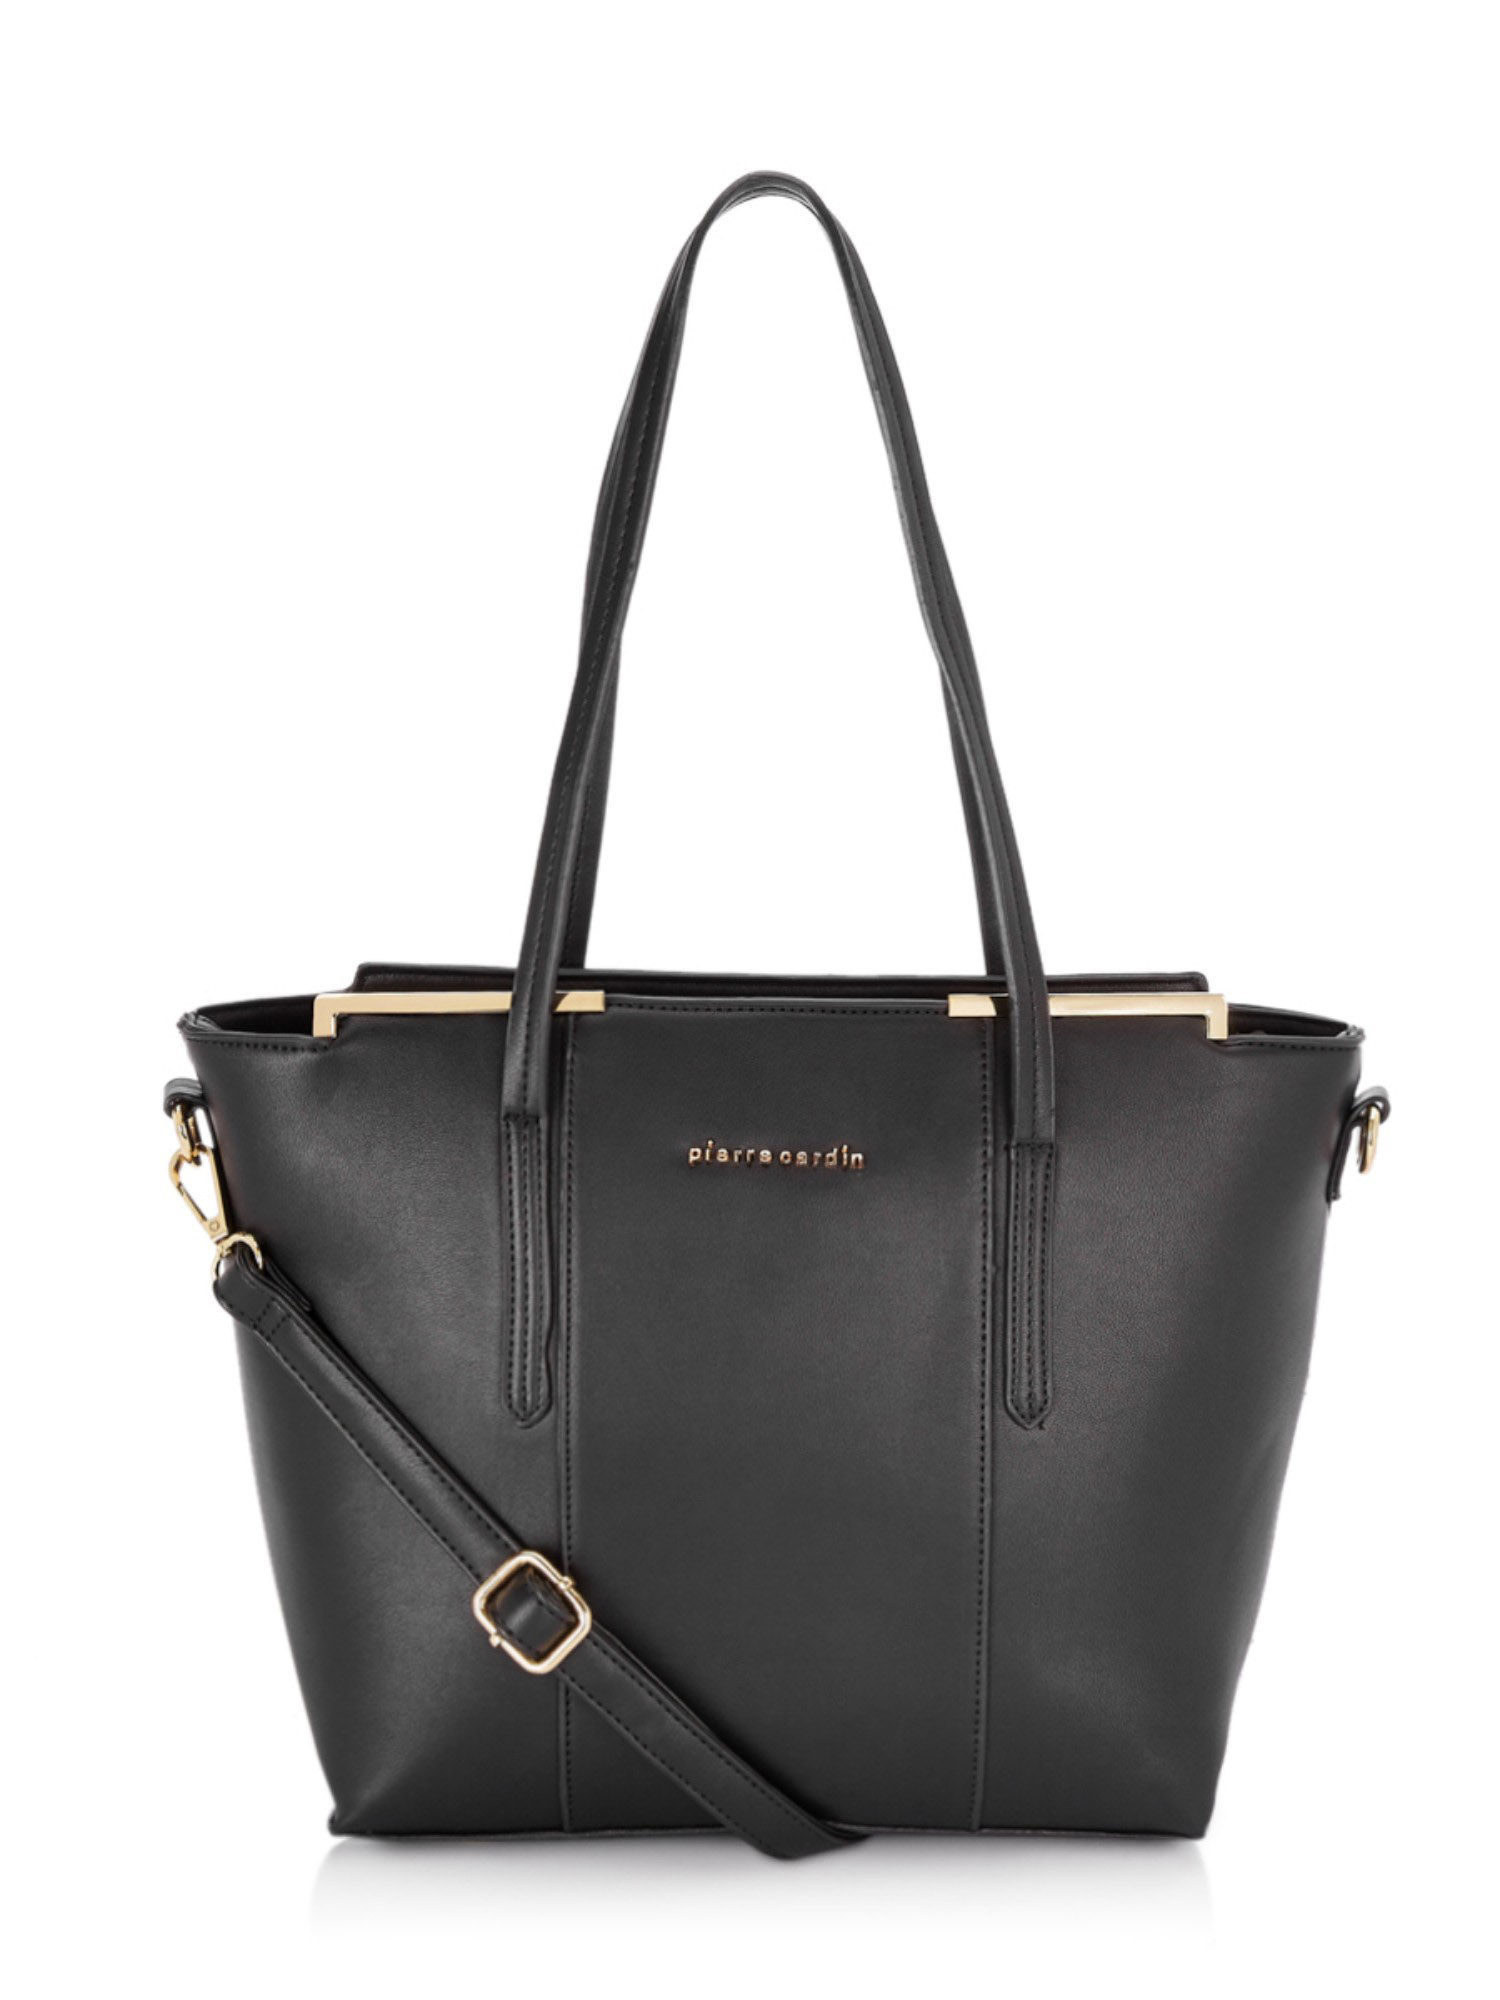 Pierre Cardin Long Strap Handbags | Mercari